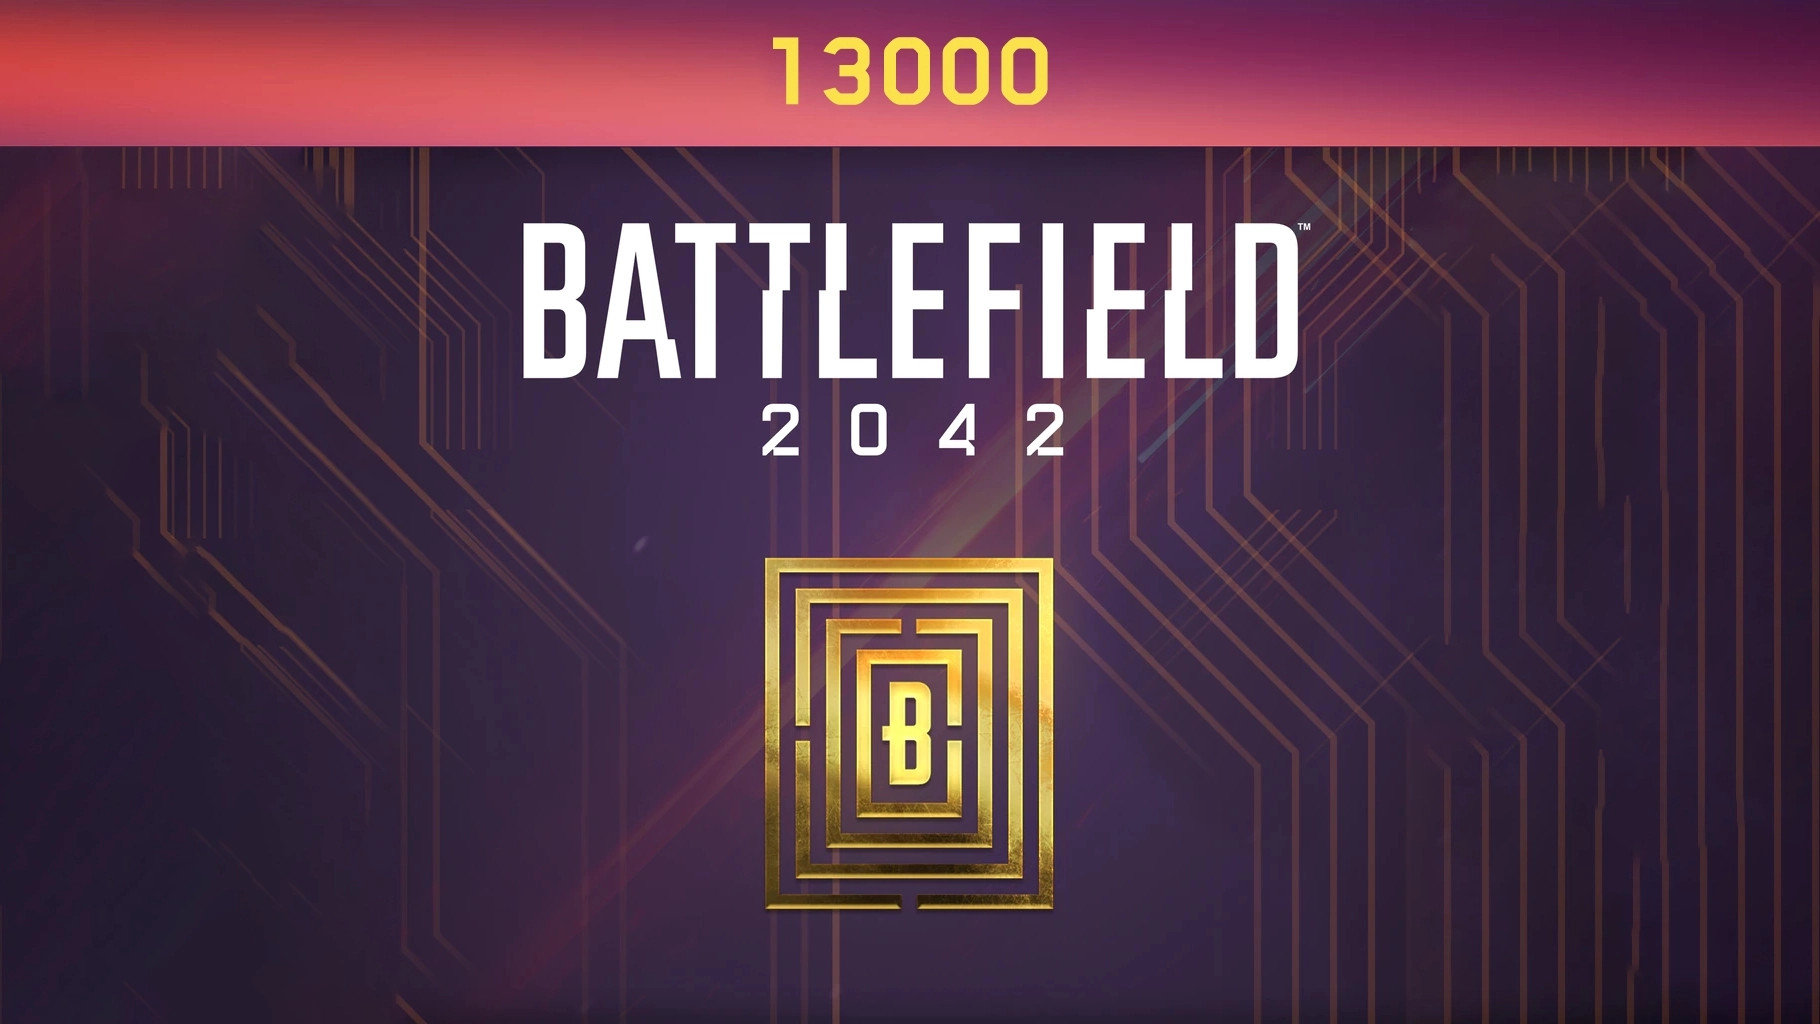 Battlefield 2042 - 13000 BFC Balance XBOX One / Xbox Series X|S CD Key USD 96.6